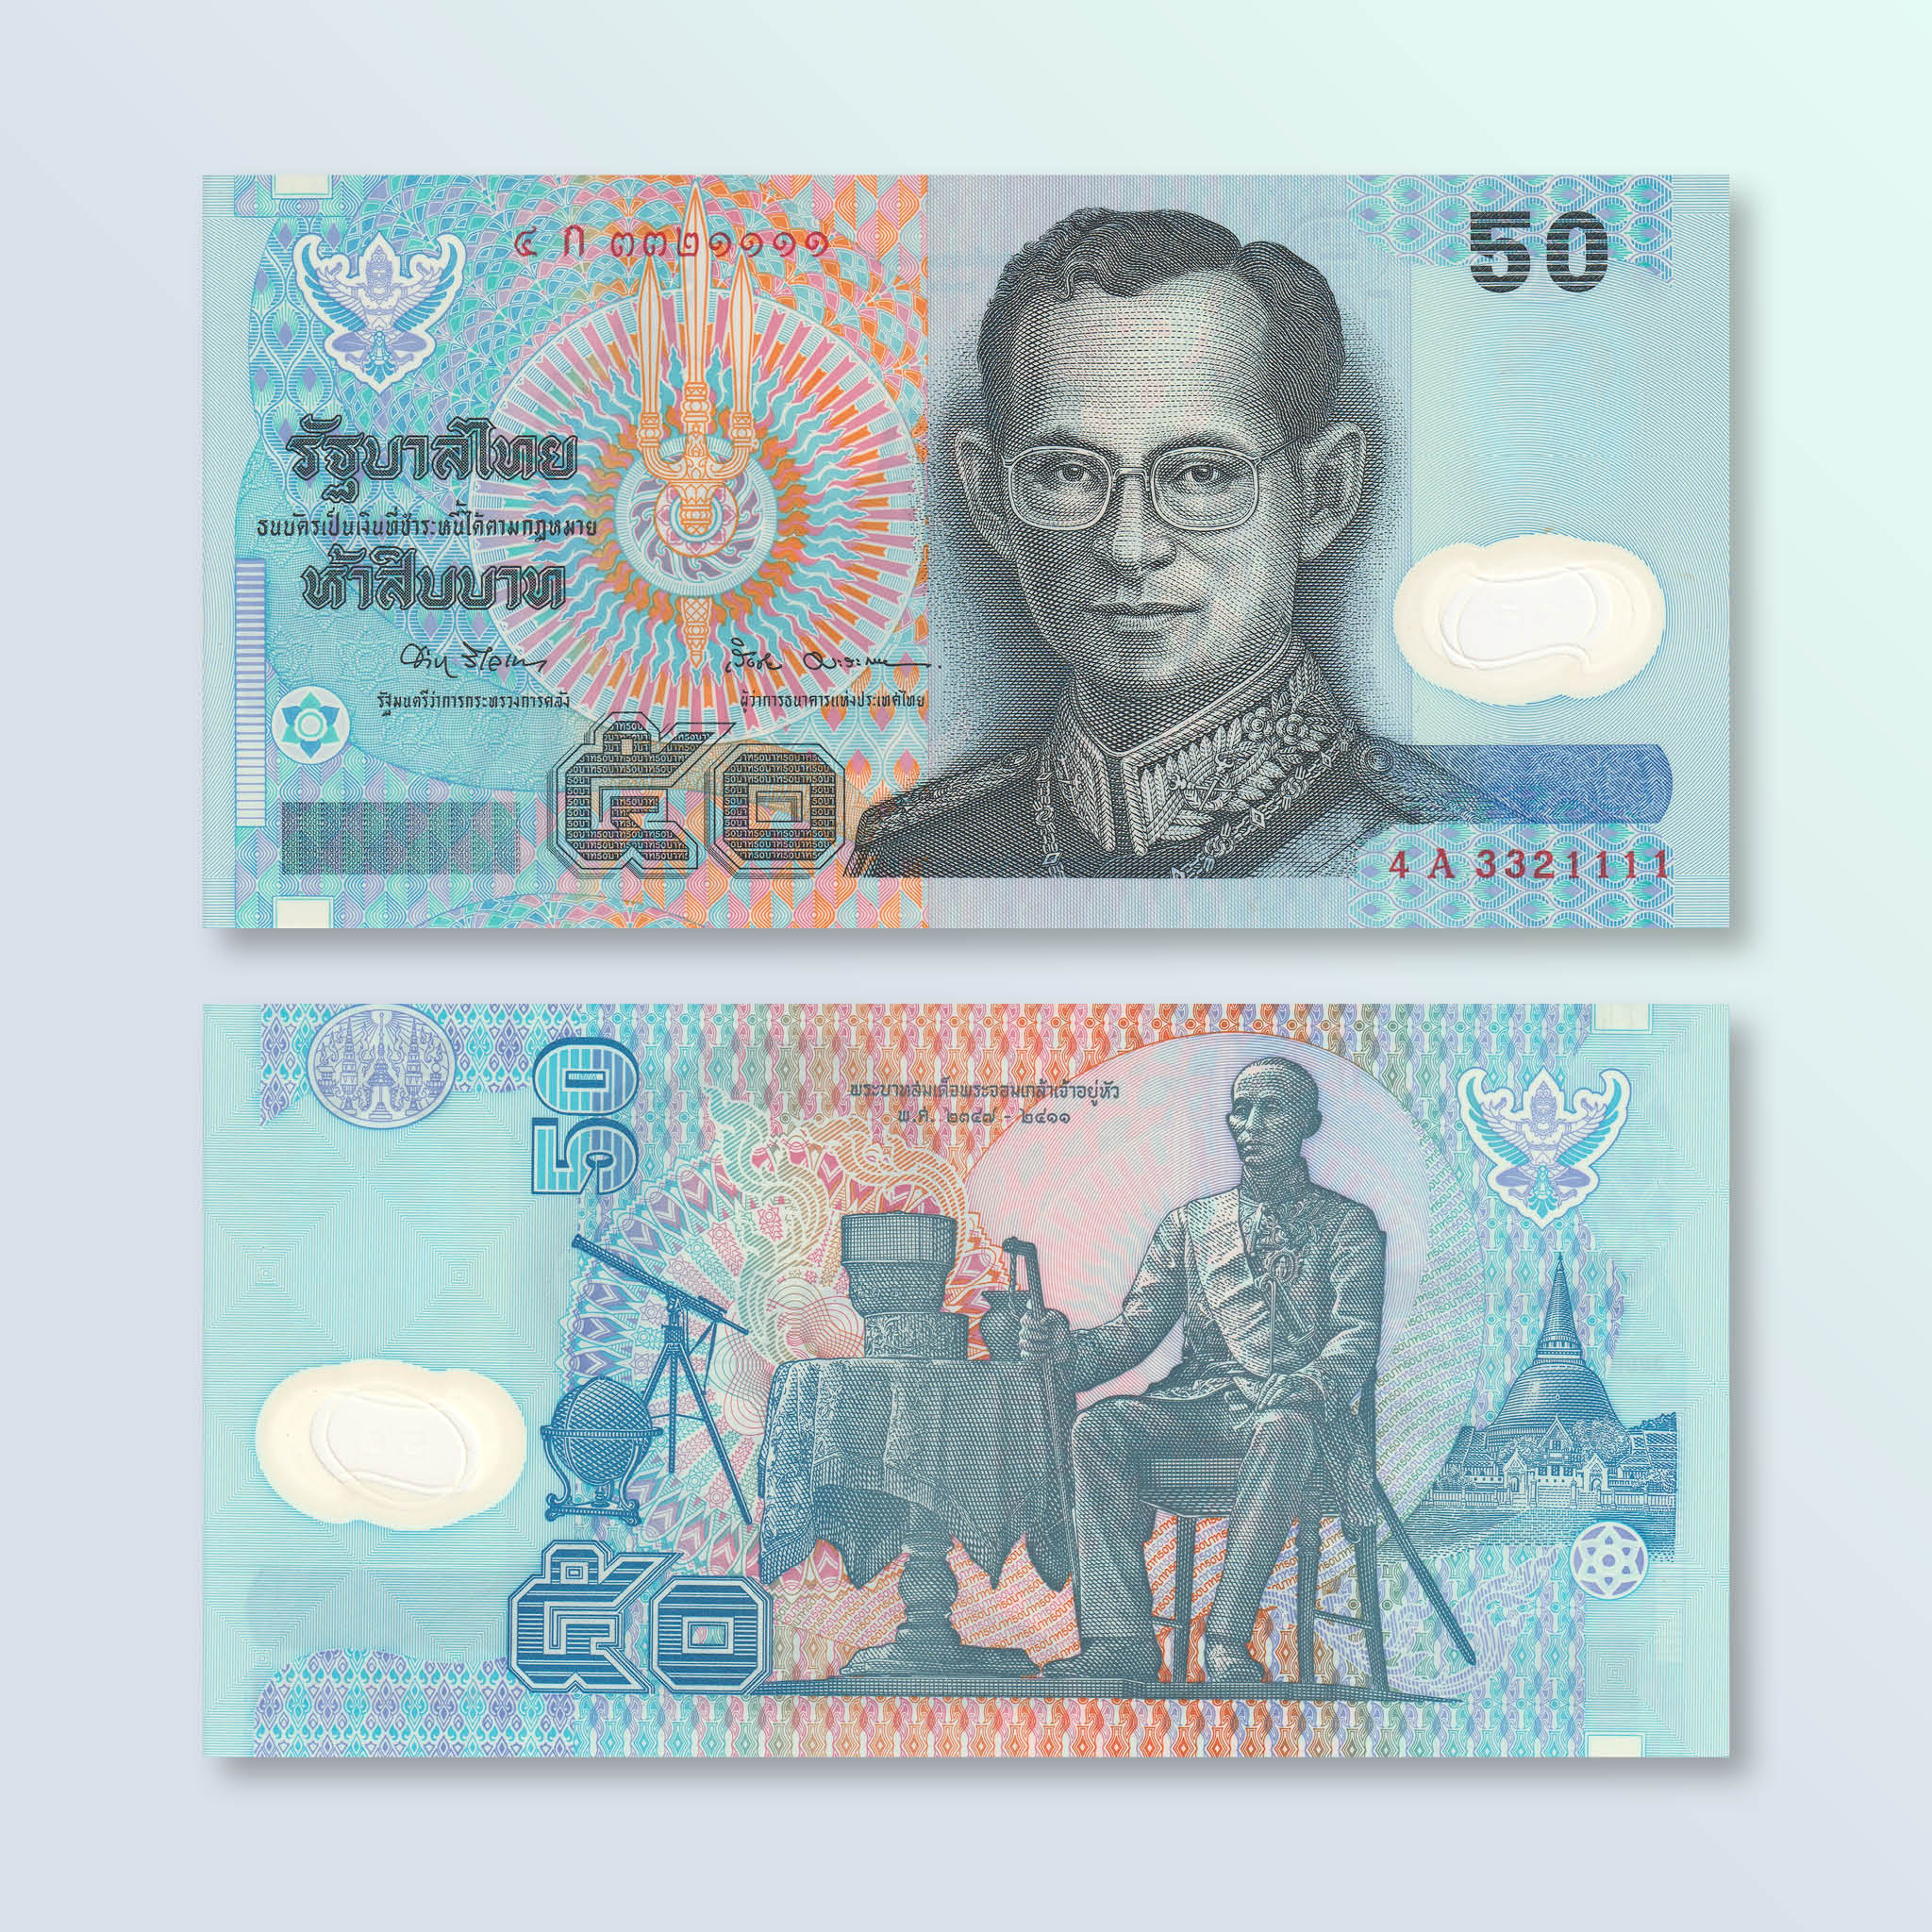 Thailand 50 Baht, 1997, B172a, P102a, UNC - Robert's World Money - World Banknotes